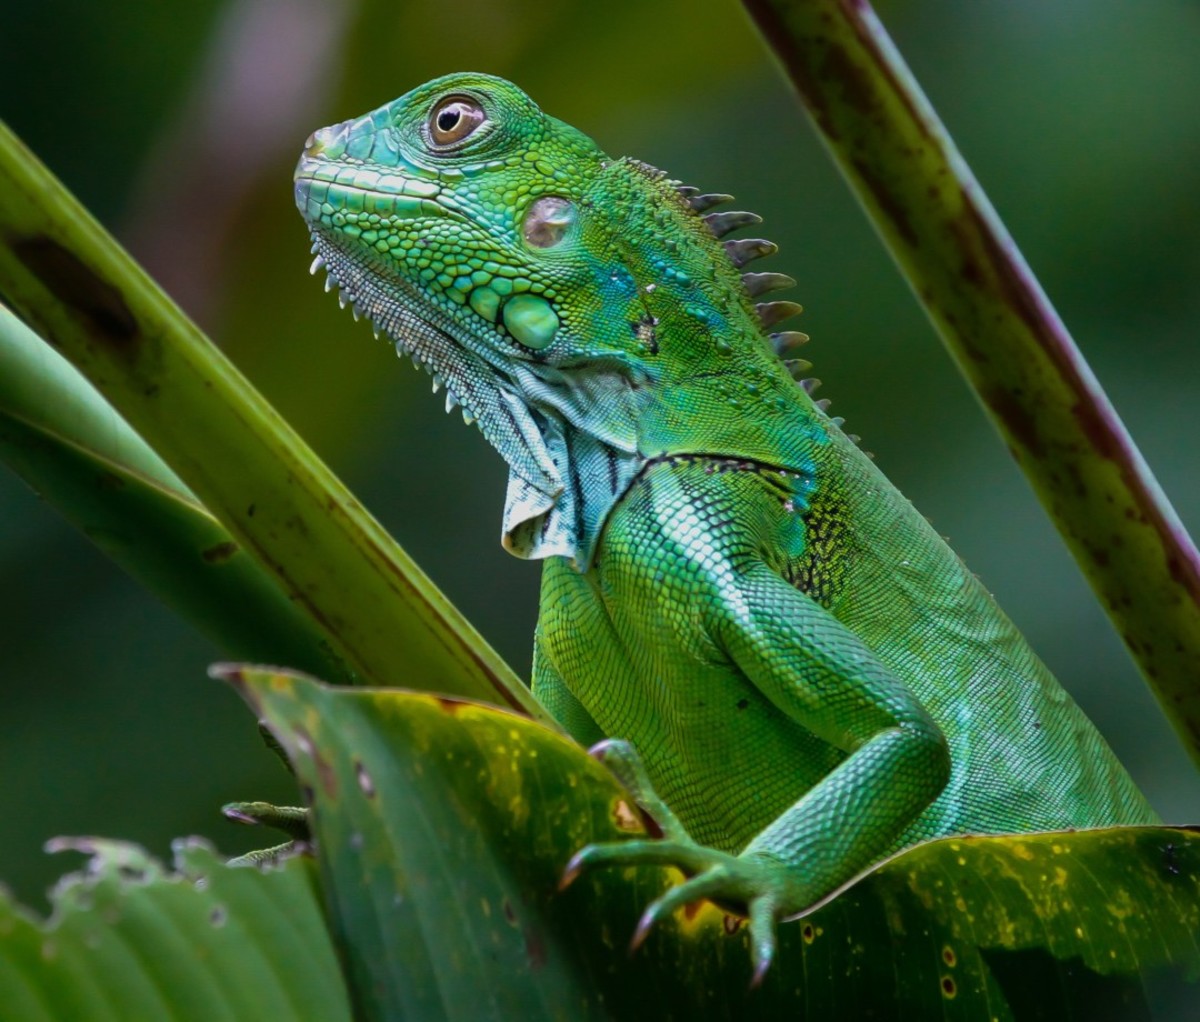 Green Iguana in jungle